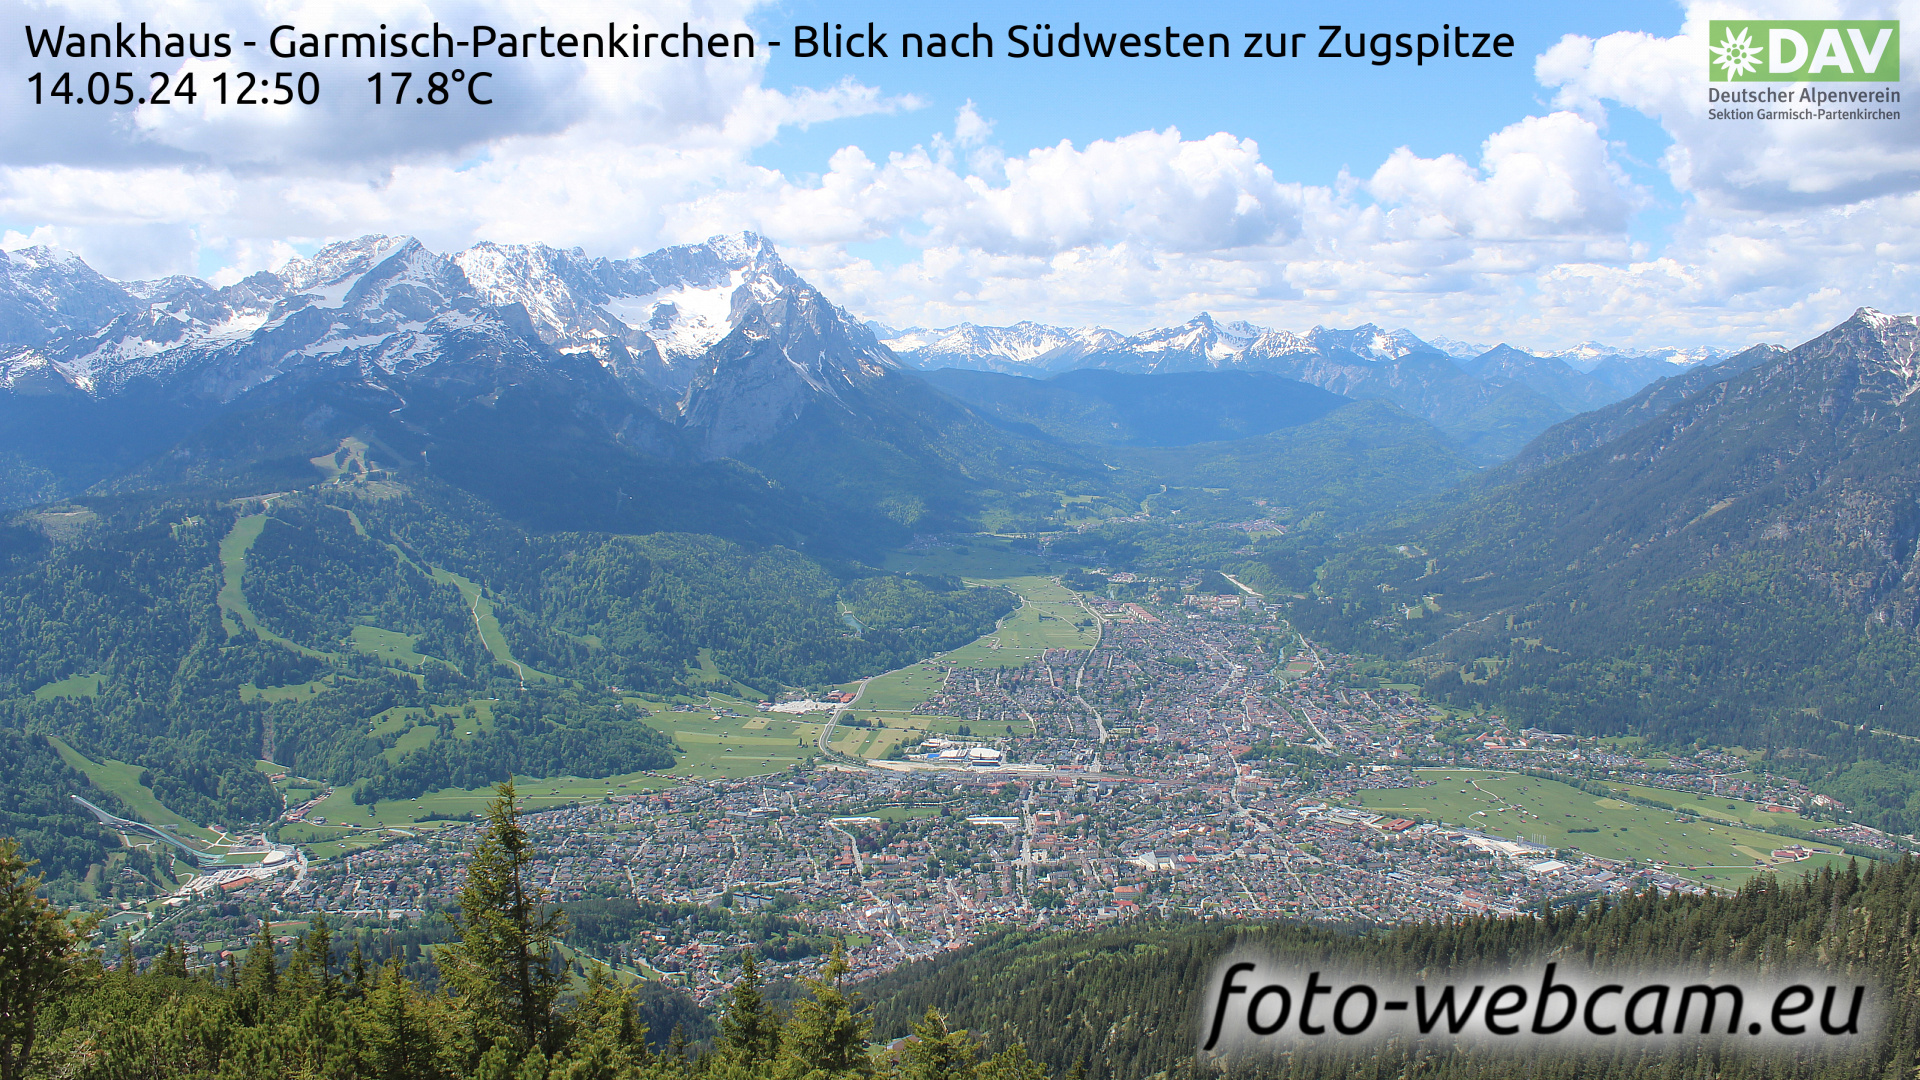 Garmisch-Partenkirchen Thu. 12:51